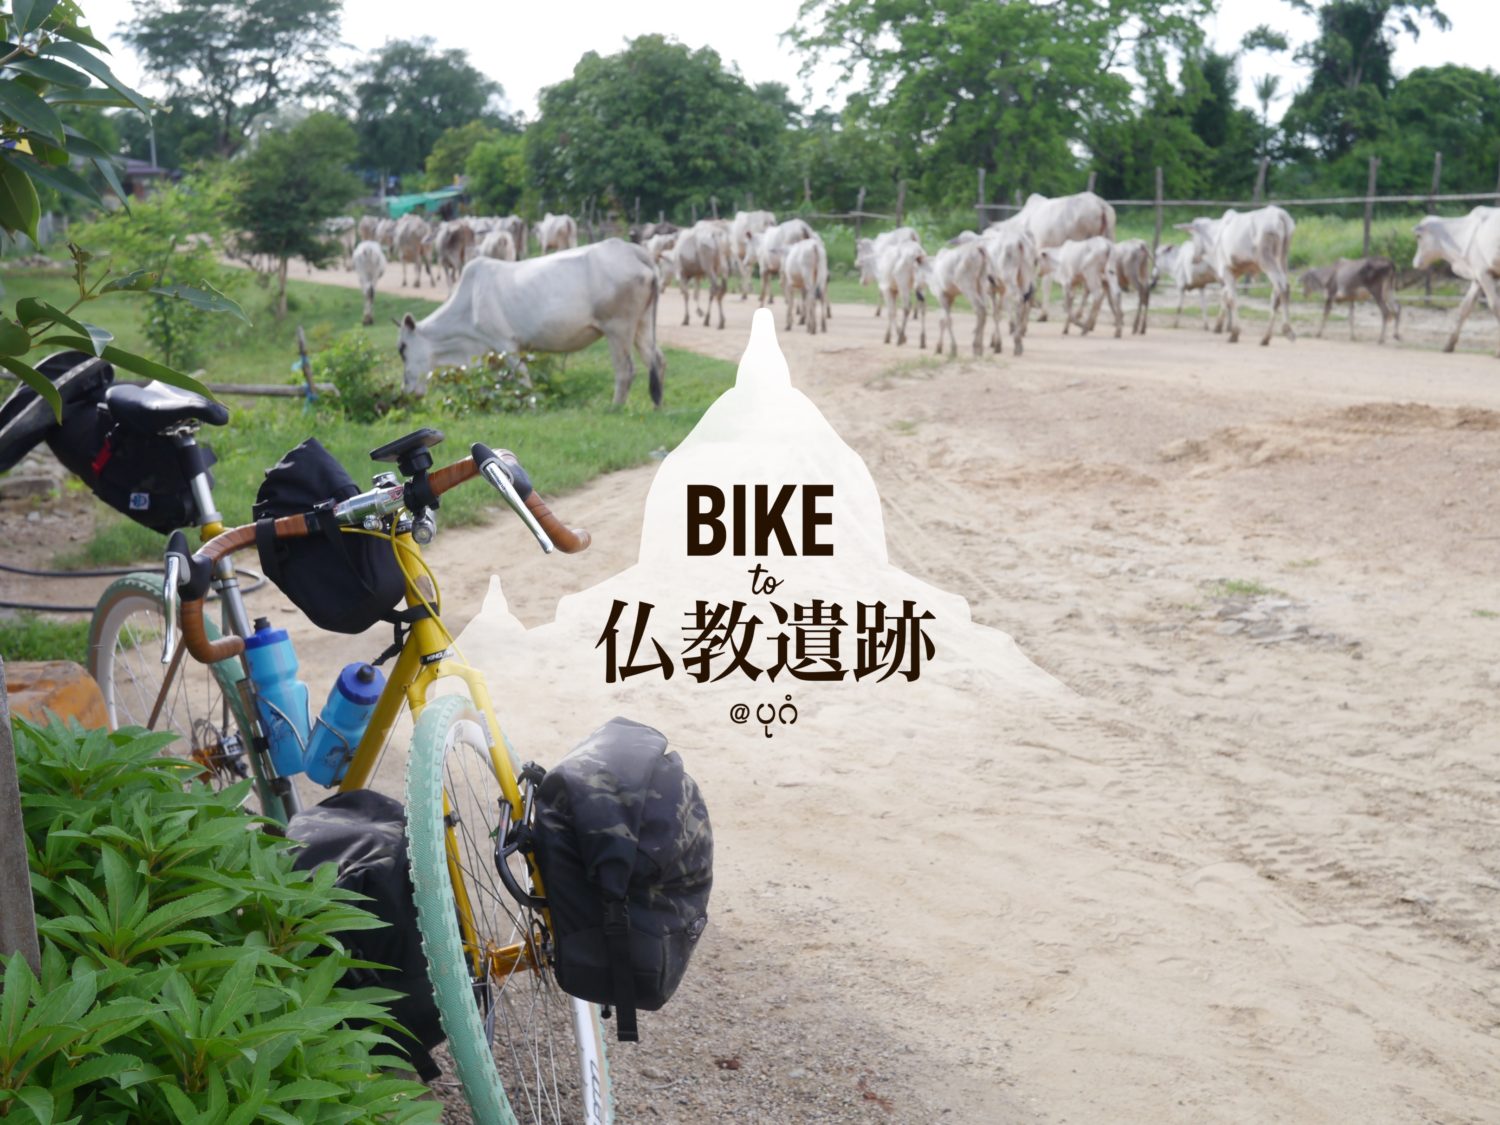 Bike to 仏教遺跡